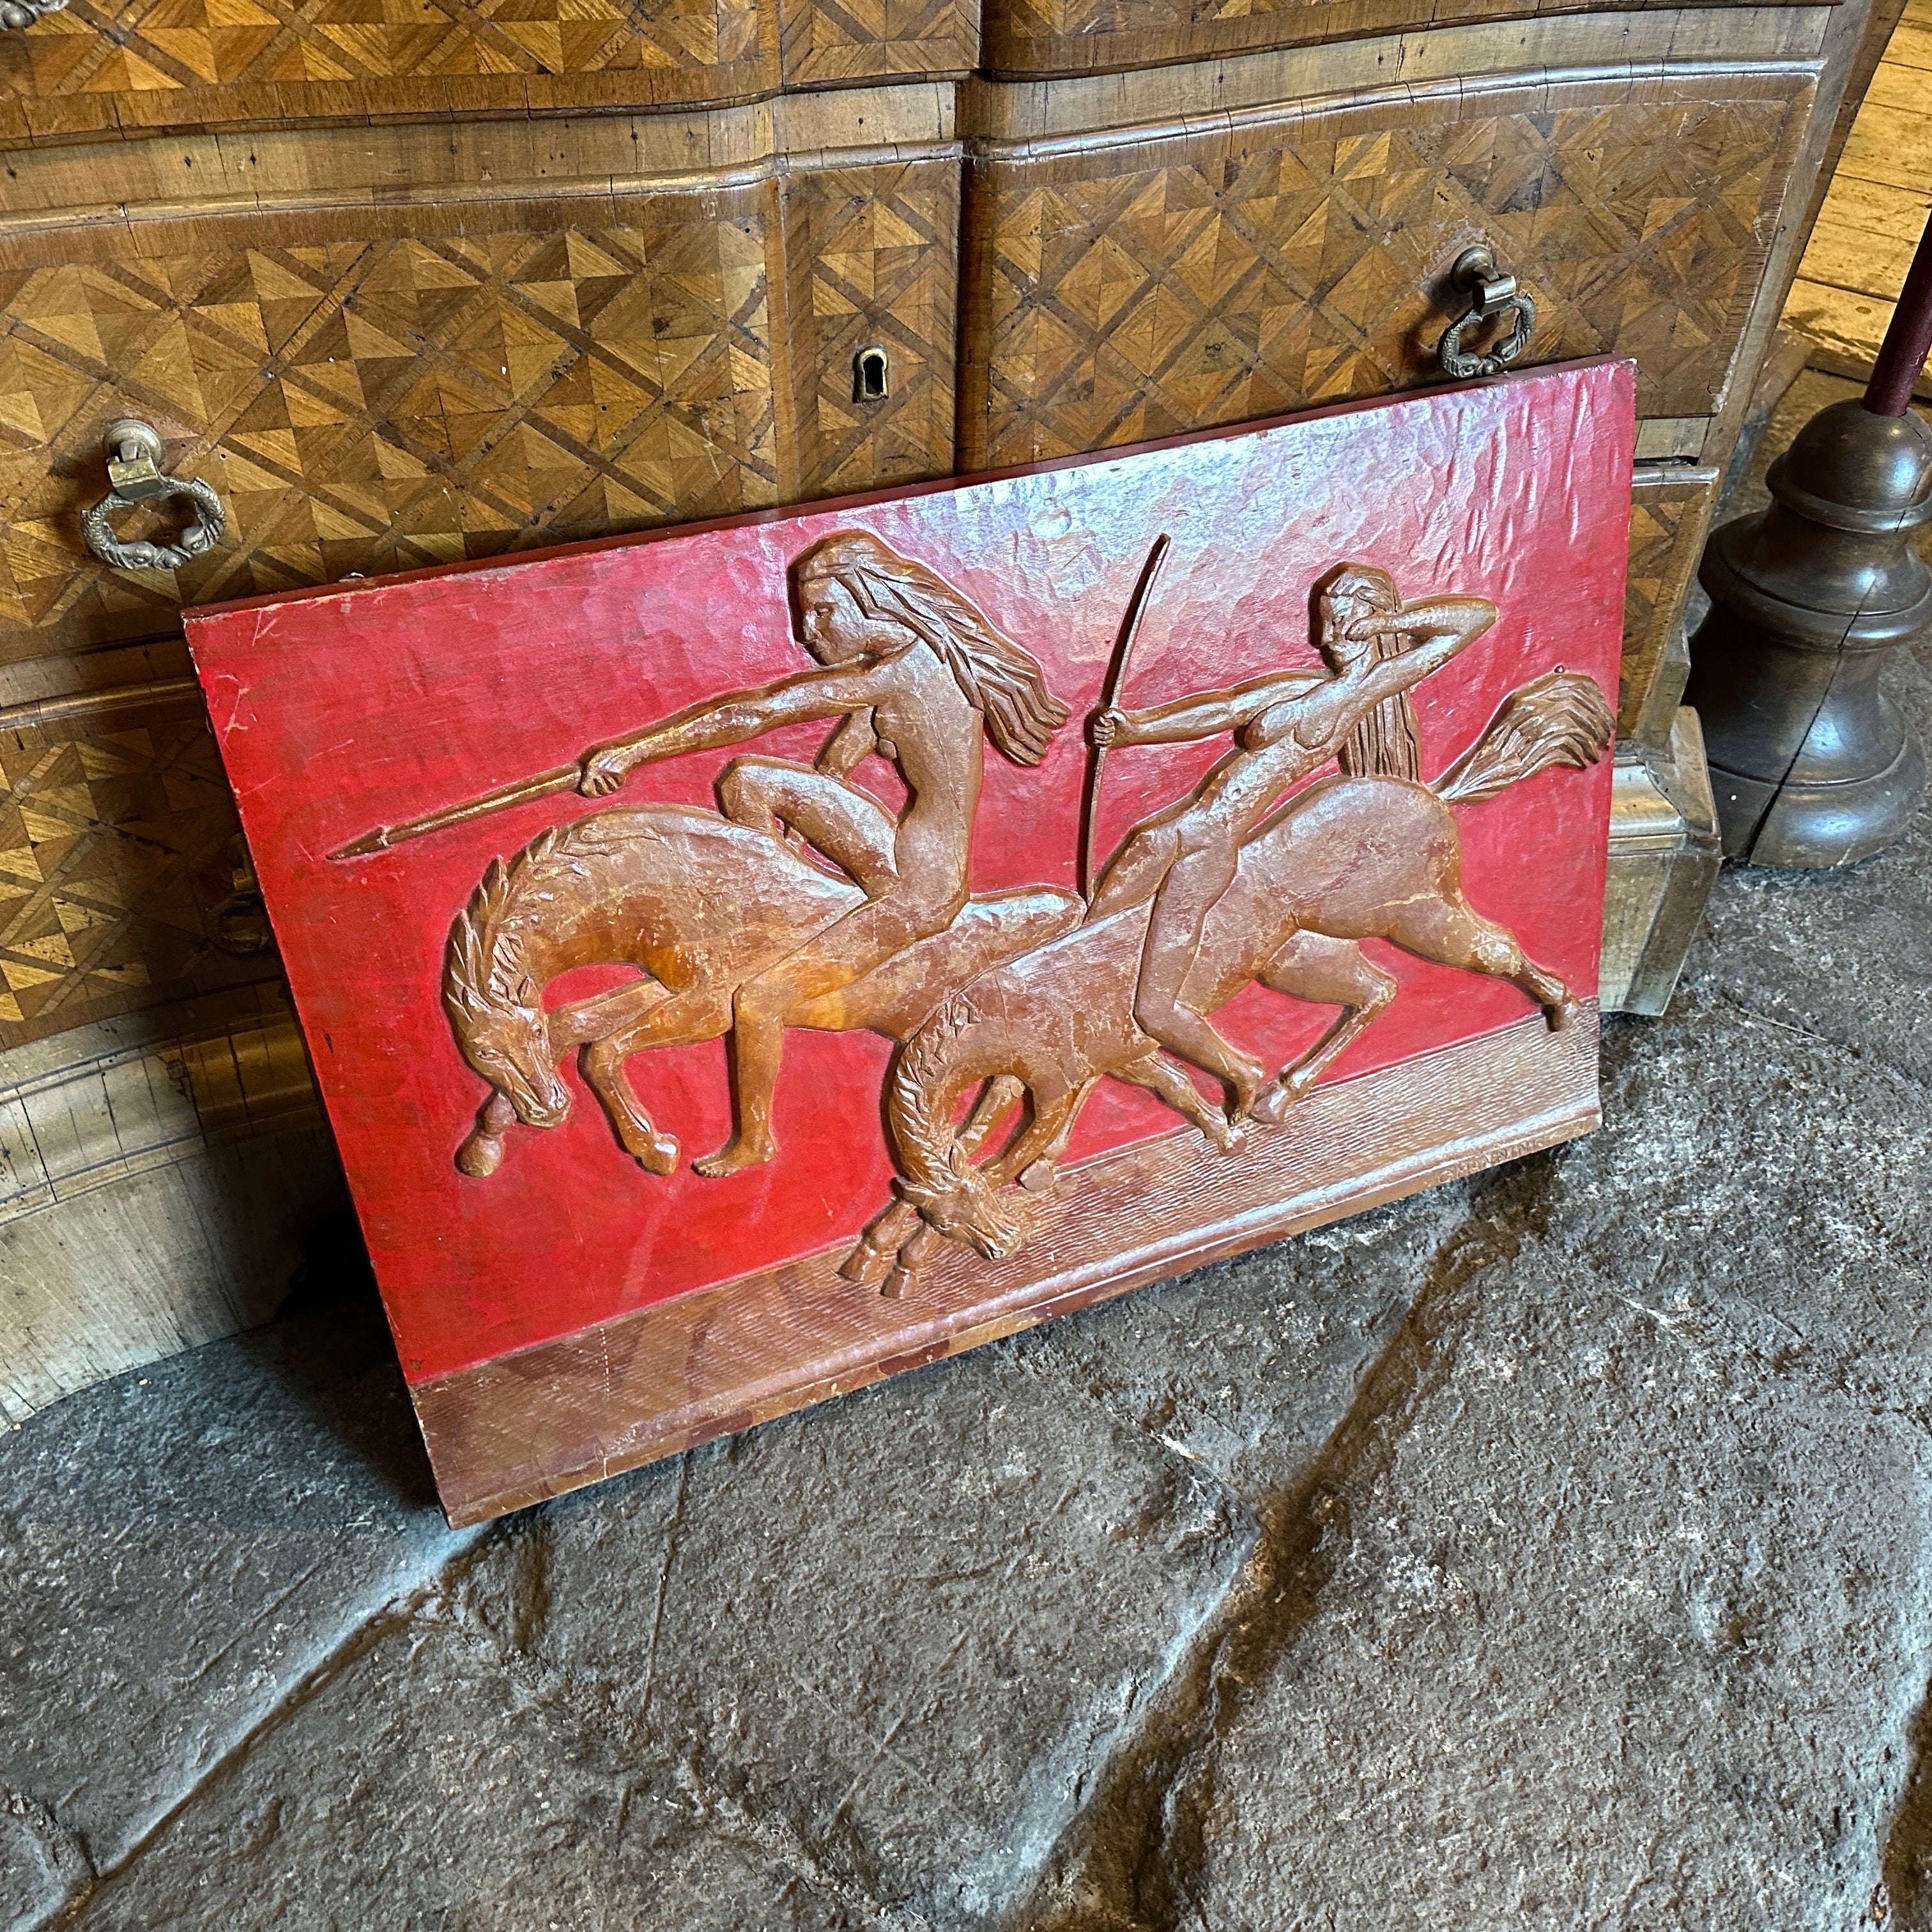 Un étonnant bas-relief en bois sculpté à la main représentant deux amazones sur un fond rouge. Elle a été réalisée par C.I.C. dans les années 30, elle est signée sur un côté. C'est une superbe pièce décorative qui témoigne de l'élégance et de